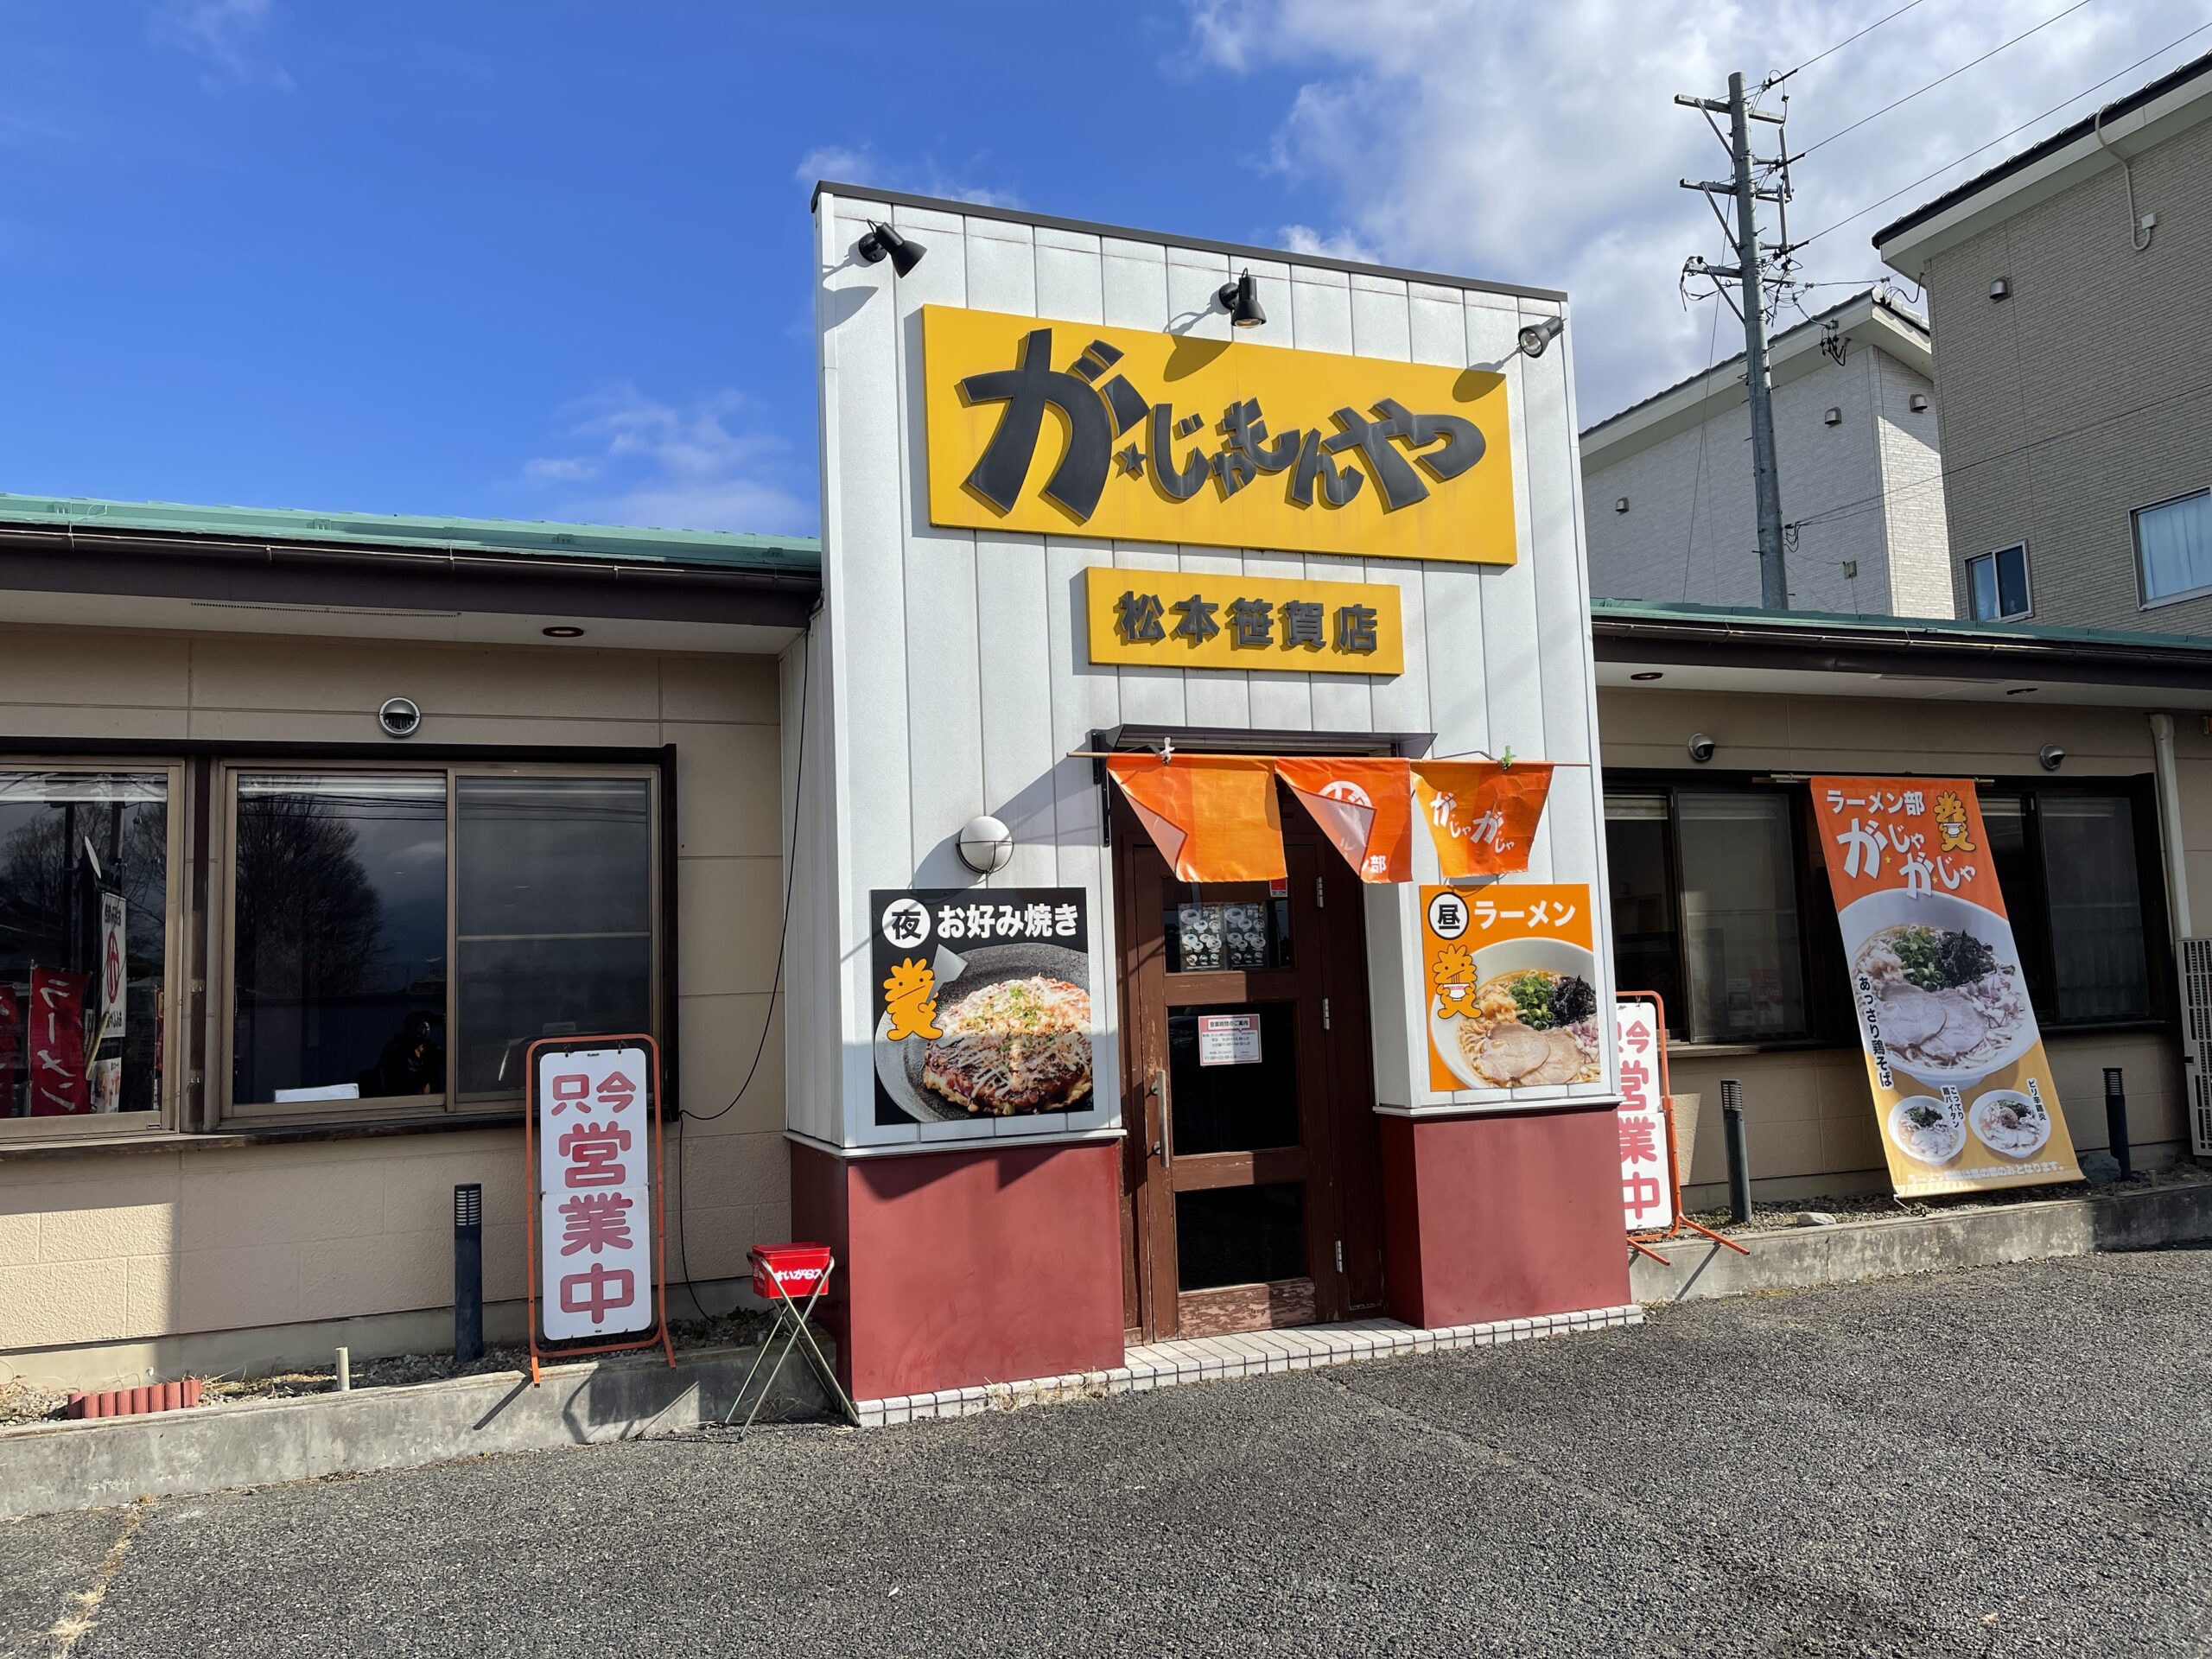 【松本市】ラーメン部「がじゃがじゃ」の鶏そばが旨すぎる話。知る人ぞ知るランチ営業のみの鶏系ラーメンの名店です。